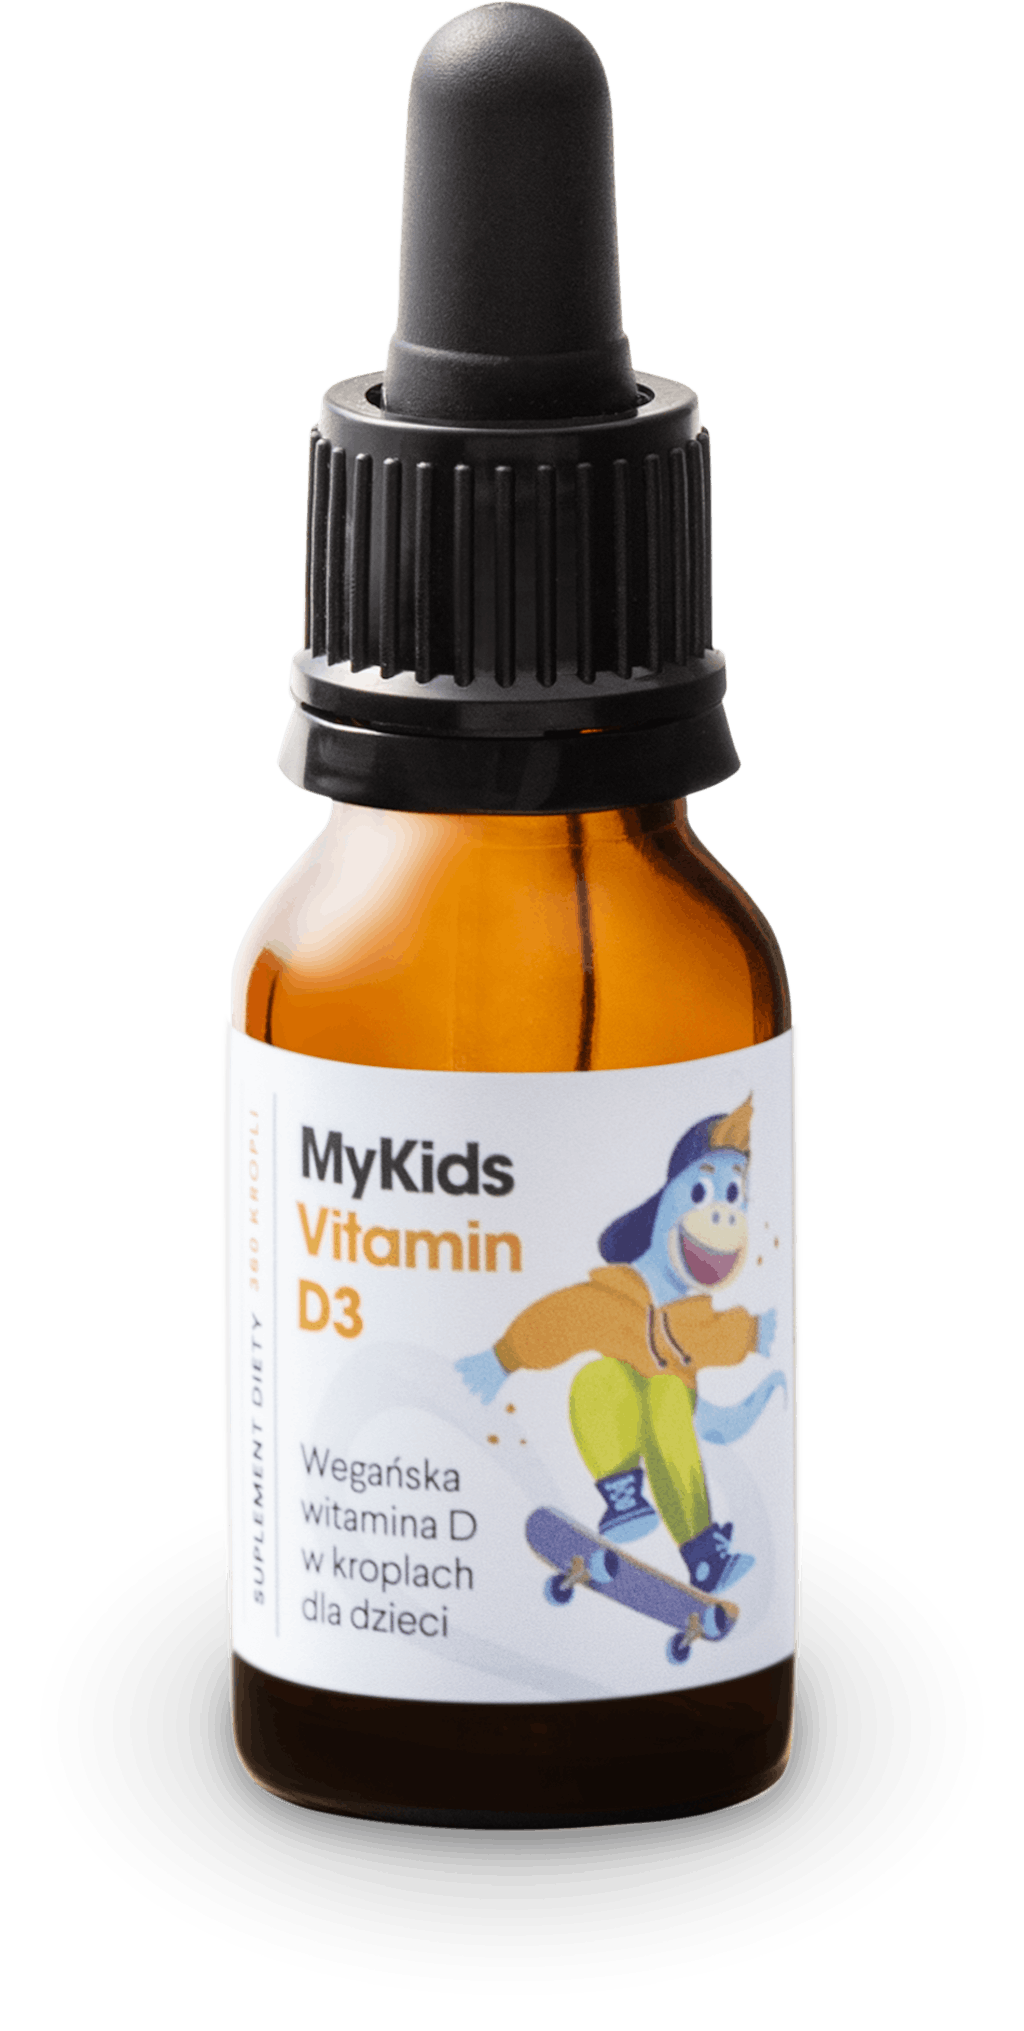 MyKids Vitamin D3